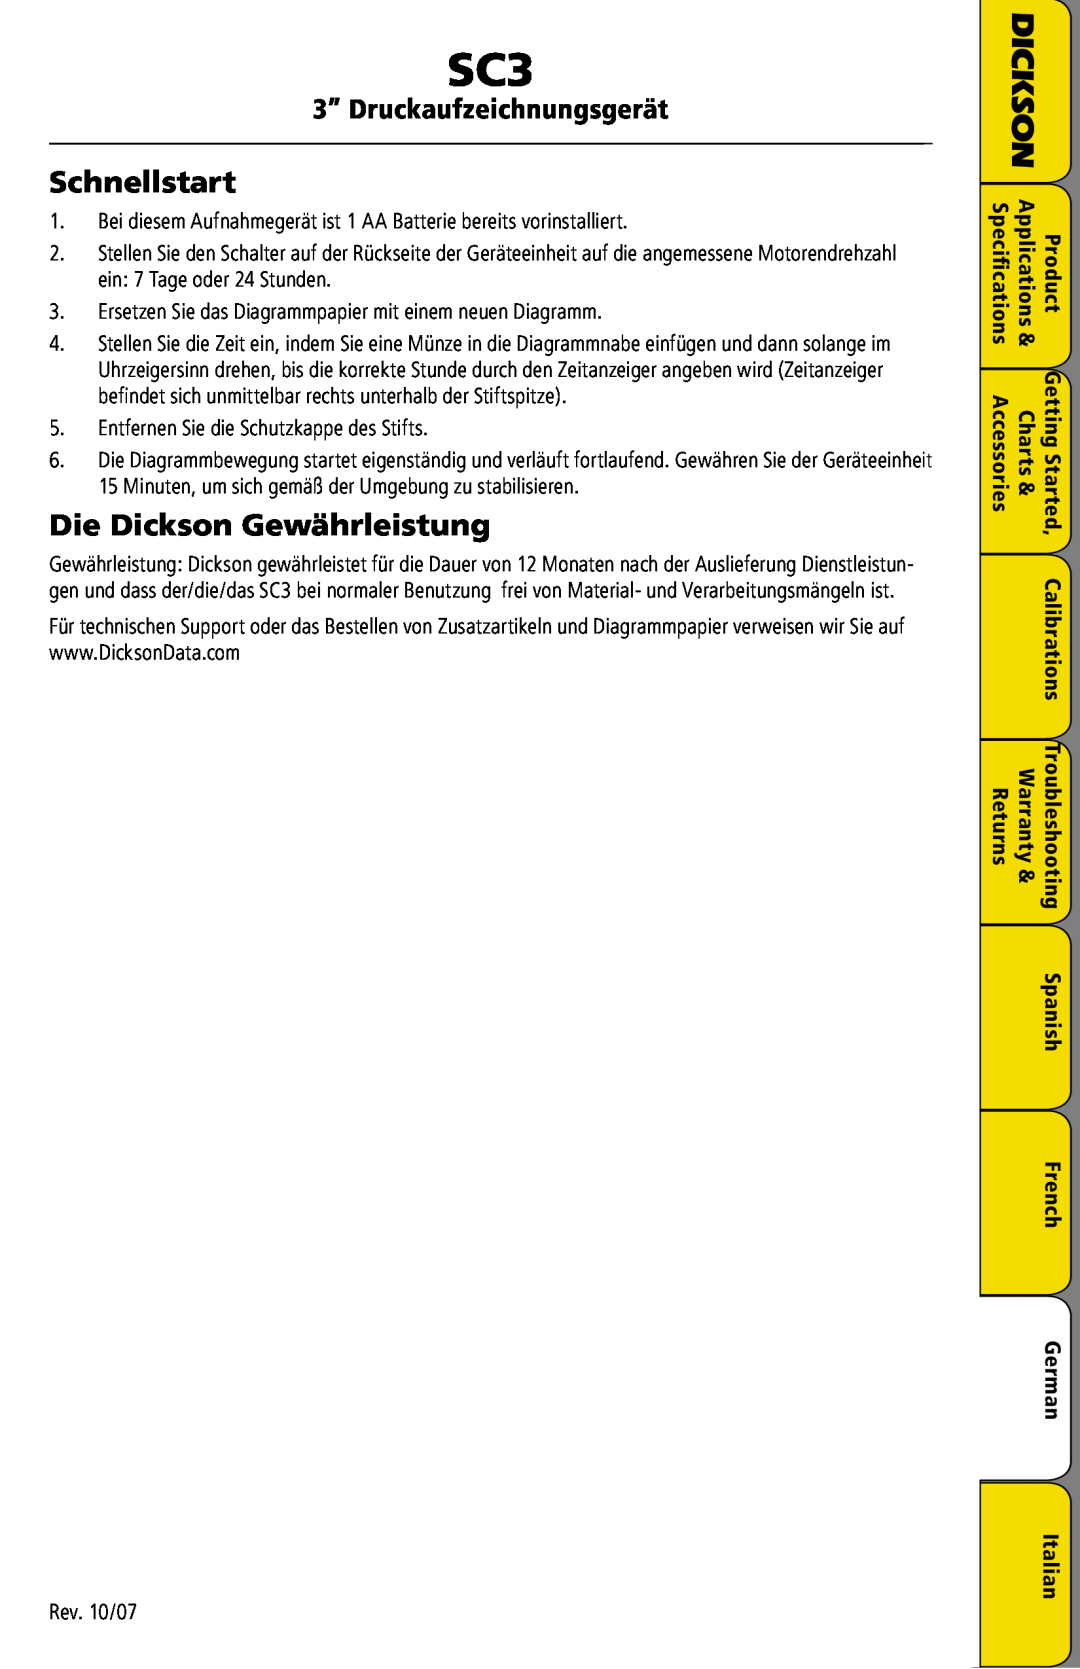 Dickson Industrial SC3 manual Schnellstart, Die Dickson Gewährleistung, 3” Druckaufzeichnungsgerät 